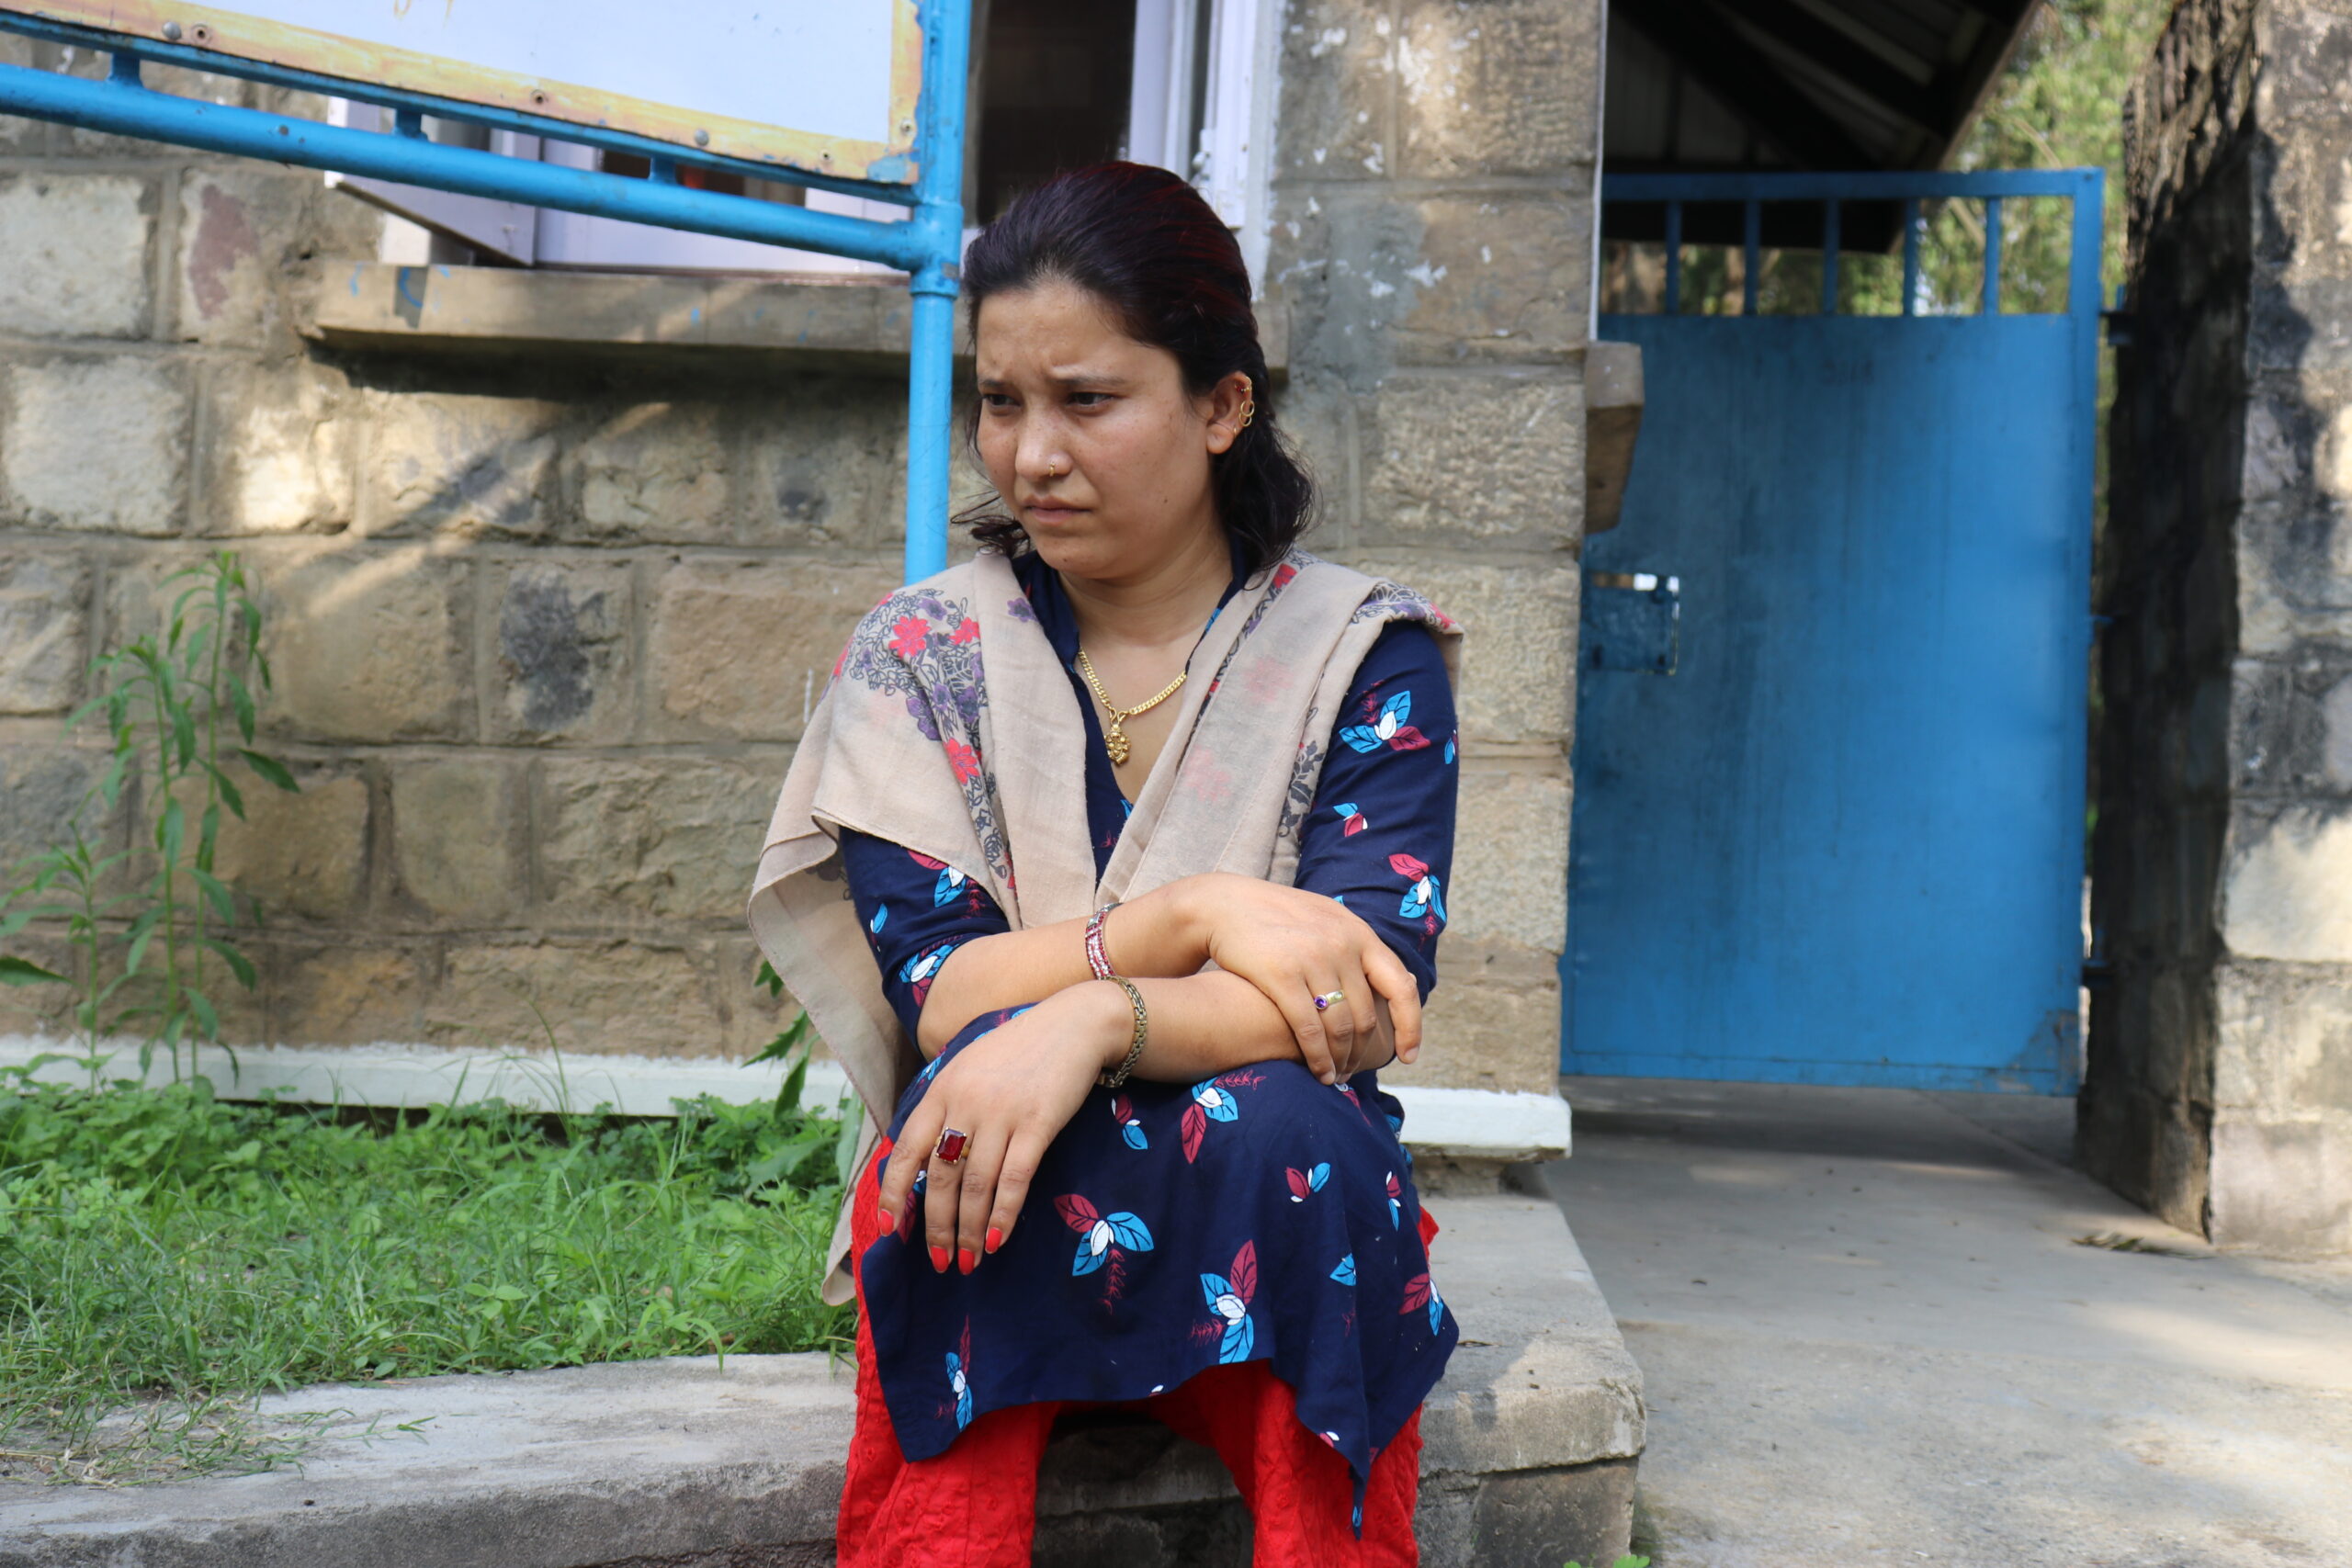 एसओएस सुर्खेतकी ‘आमा’ पीडित , बालग्राम सुर्खेतमा कार्यरत महिला कर्मचारीमाथि शोषण र दमन (भिडियोसहित)